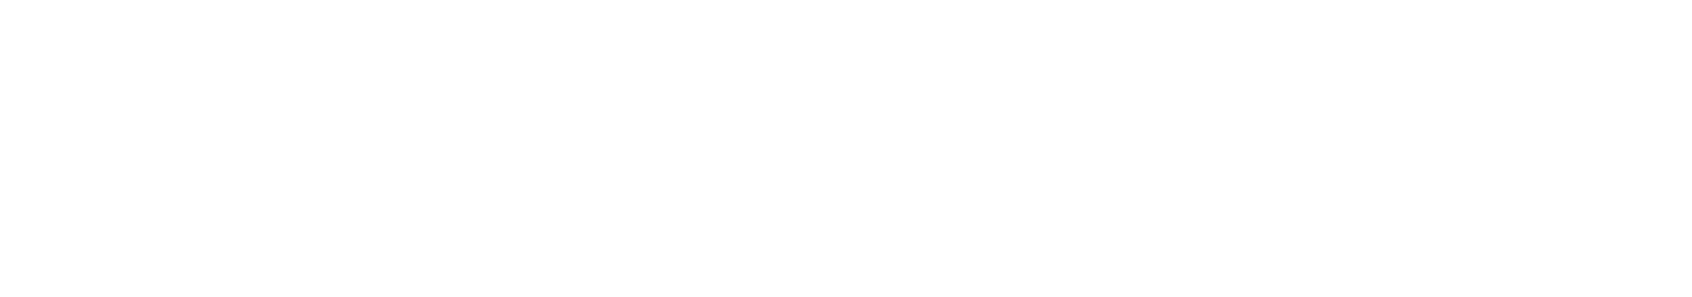 tomfordogs-logo